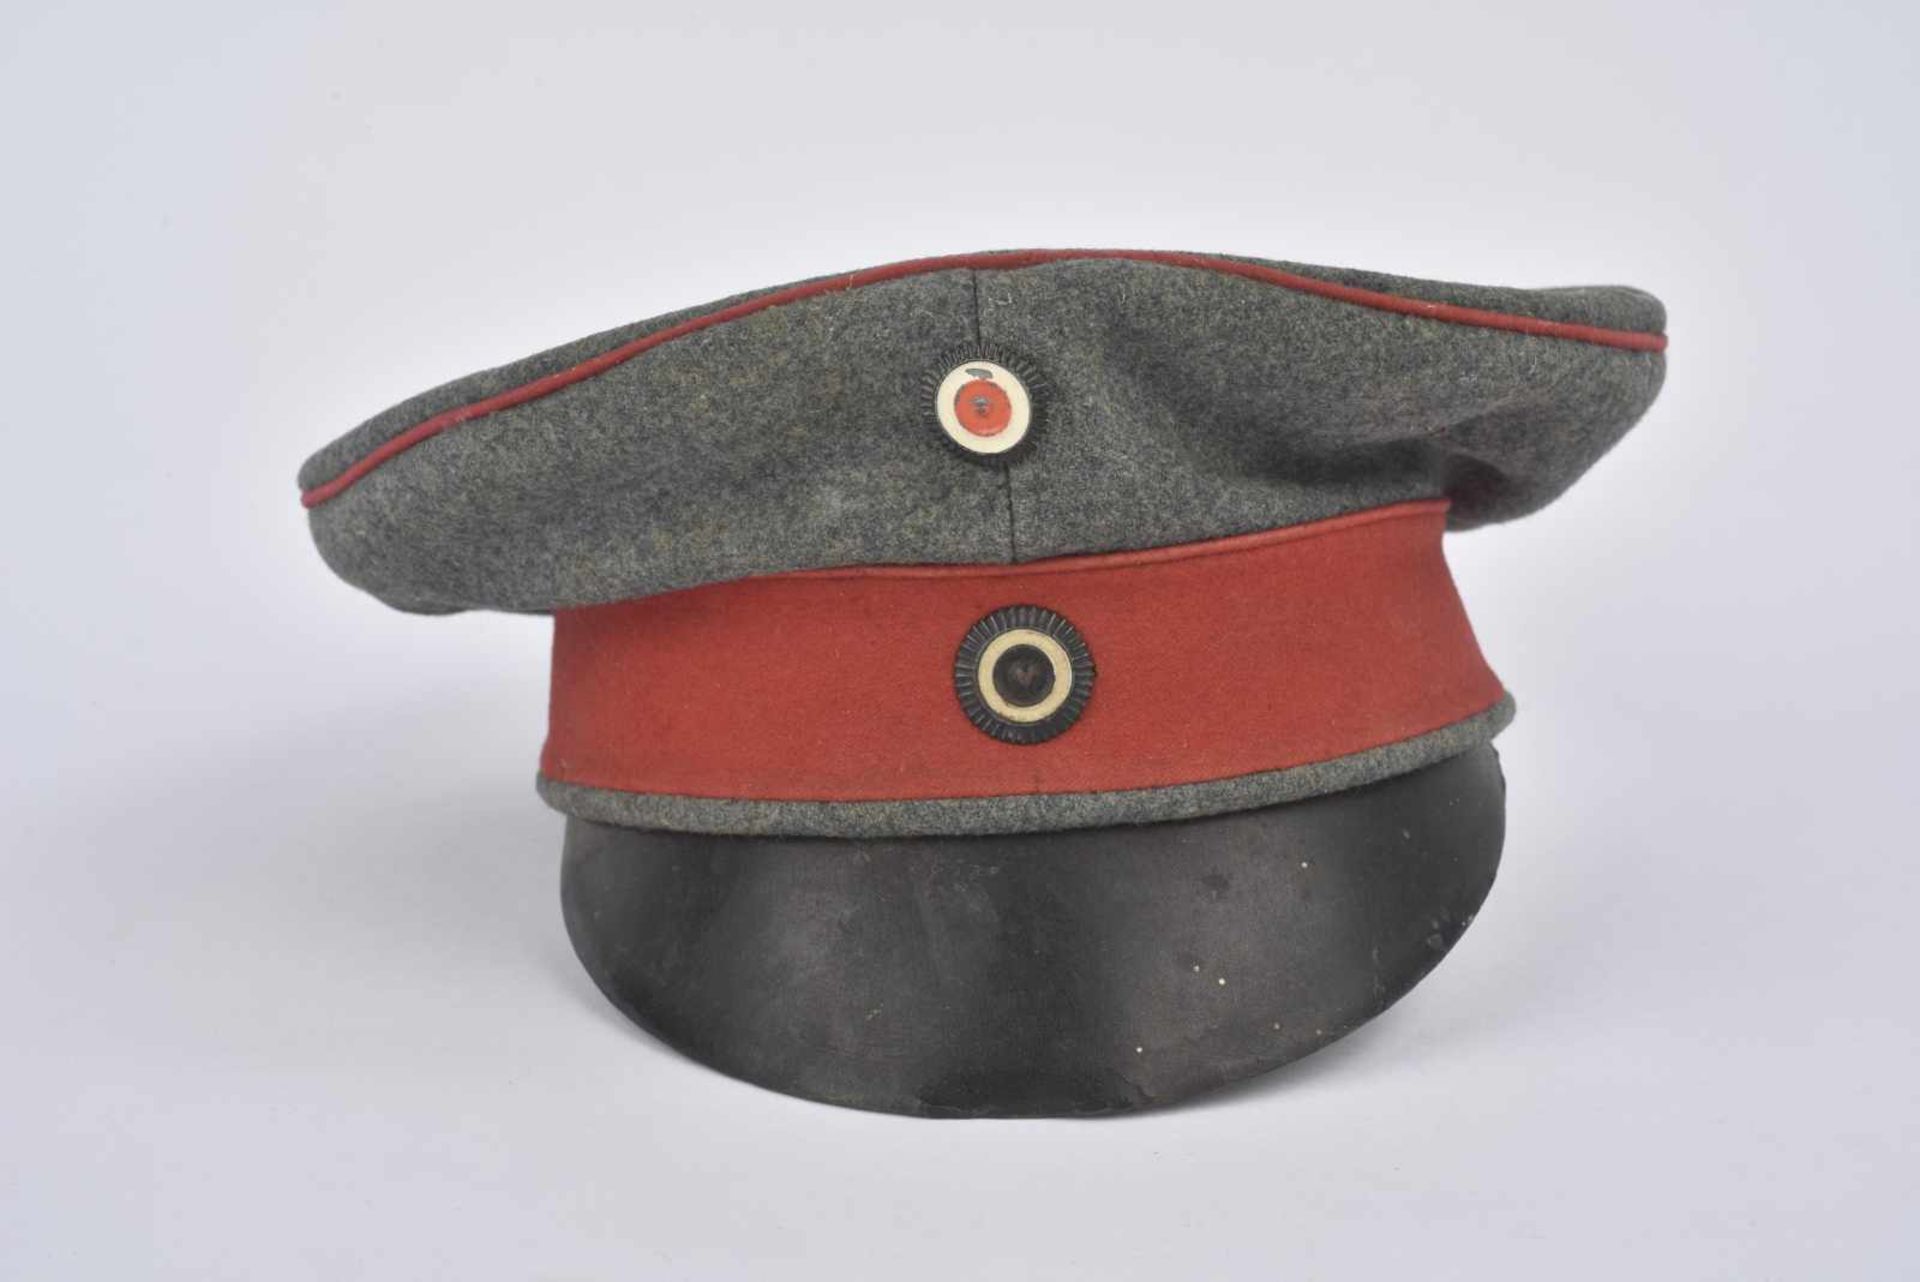 Casquette Schirmmütze prussien felgrau bandeau rouge , cocardes. Intérieur décousu. Etat II - Bild 3 aus 4